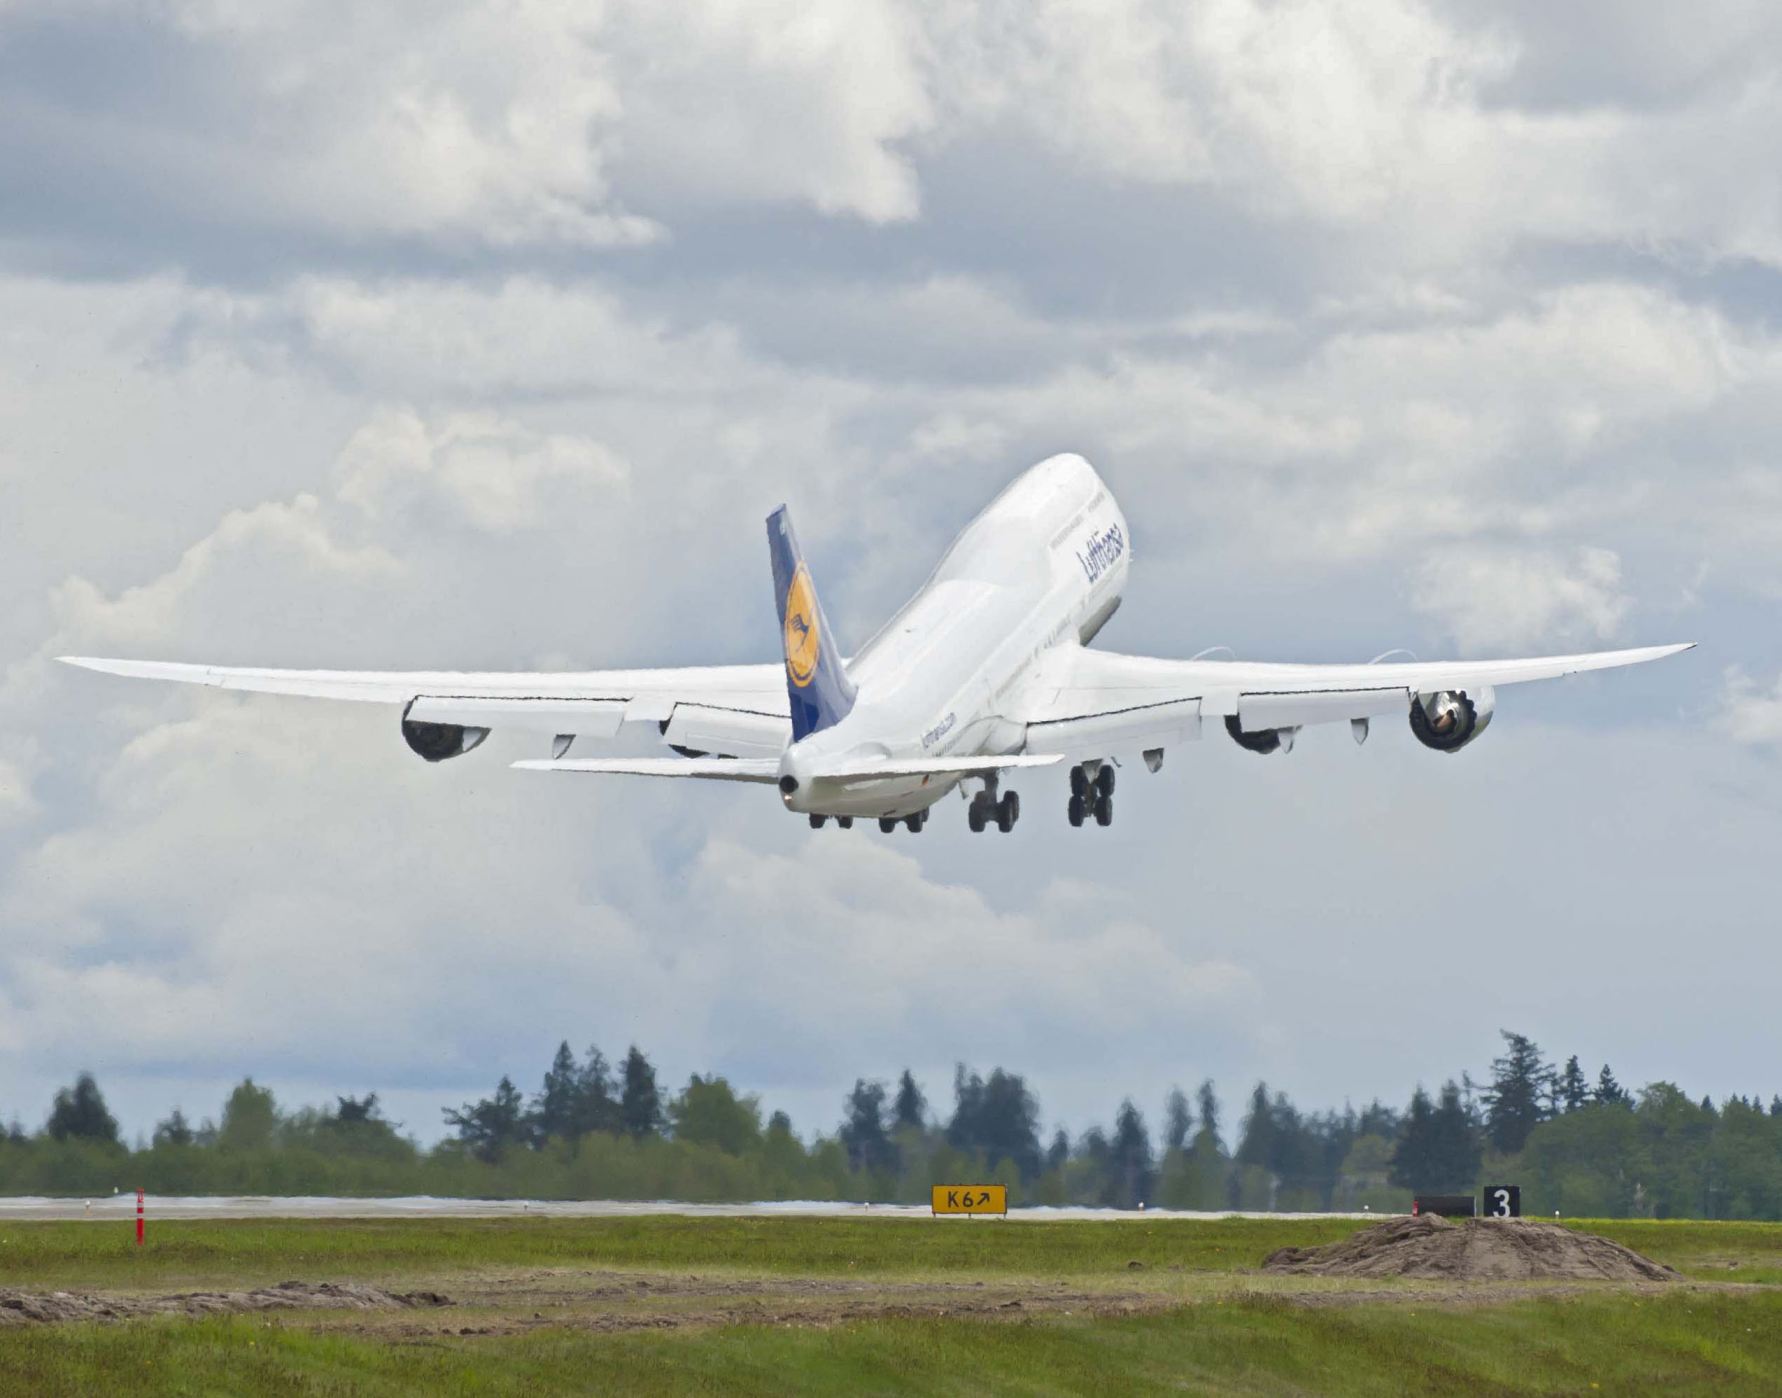 A 747-es történetének vége felé jár, de még vagy húsz példányt le kell gyártani belőle